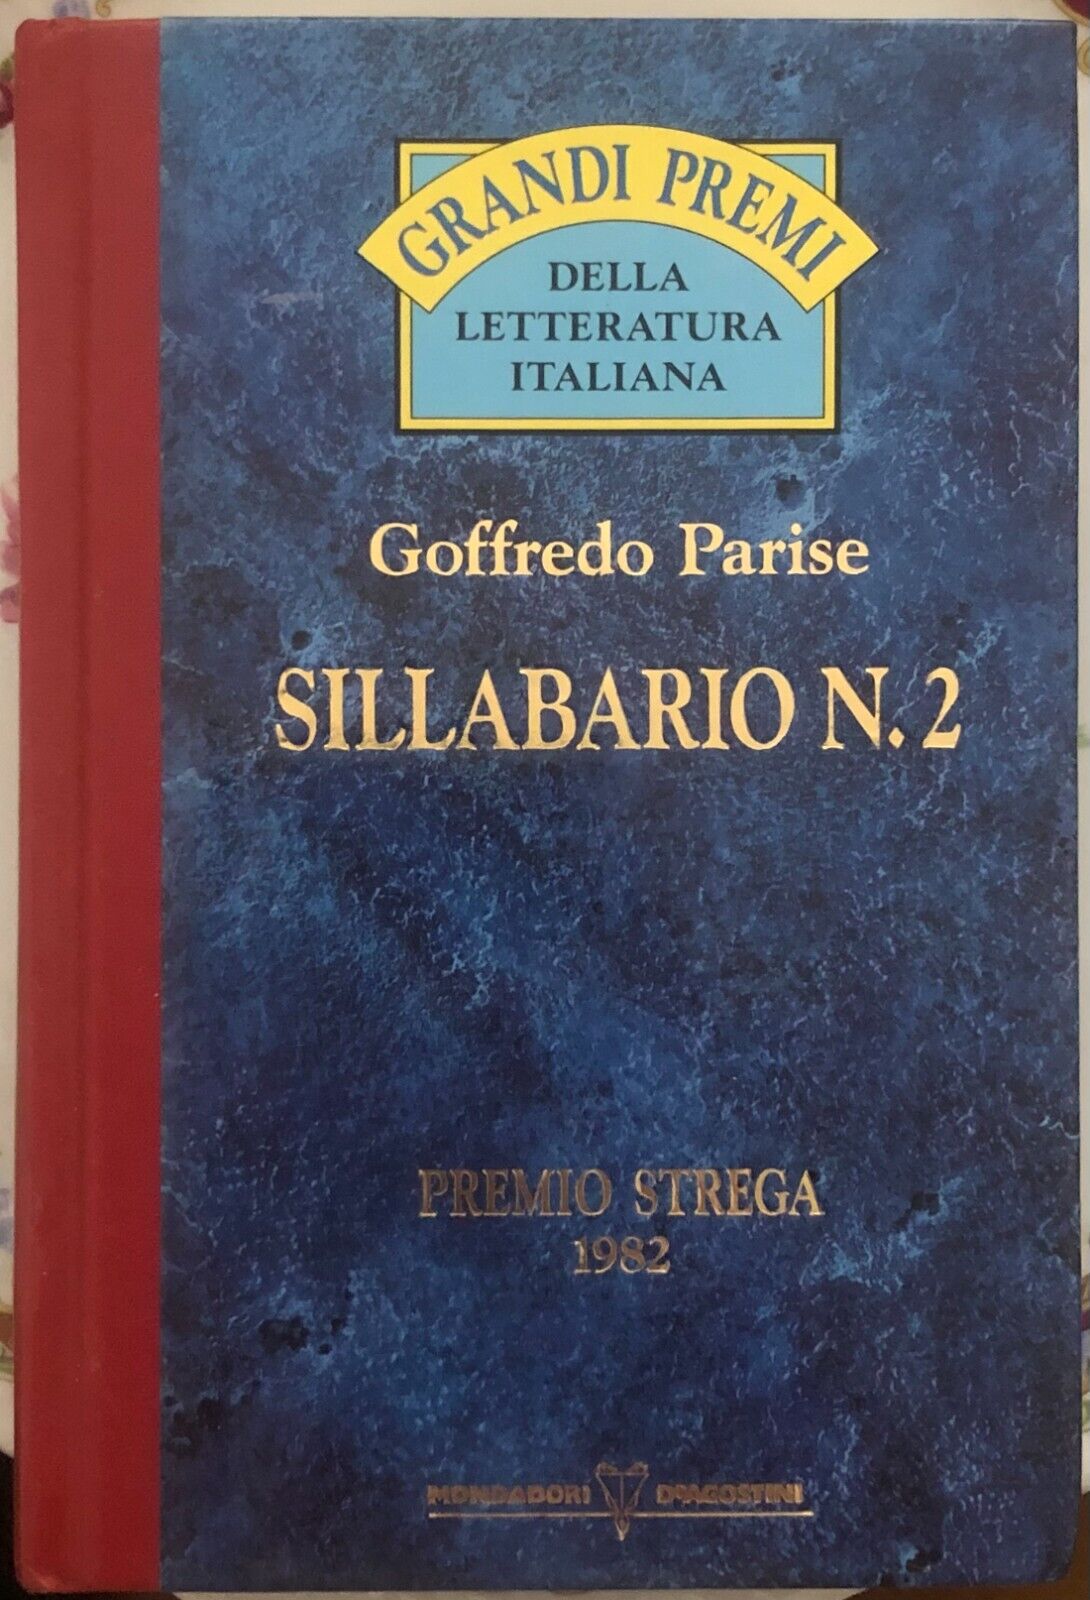 Sillabario n. 2 di Goffredo Parise,  1993,  Mondadori Deagostini